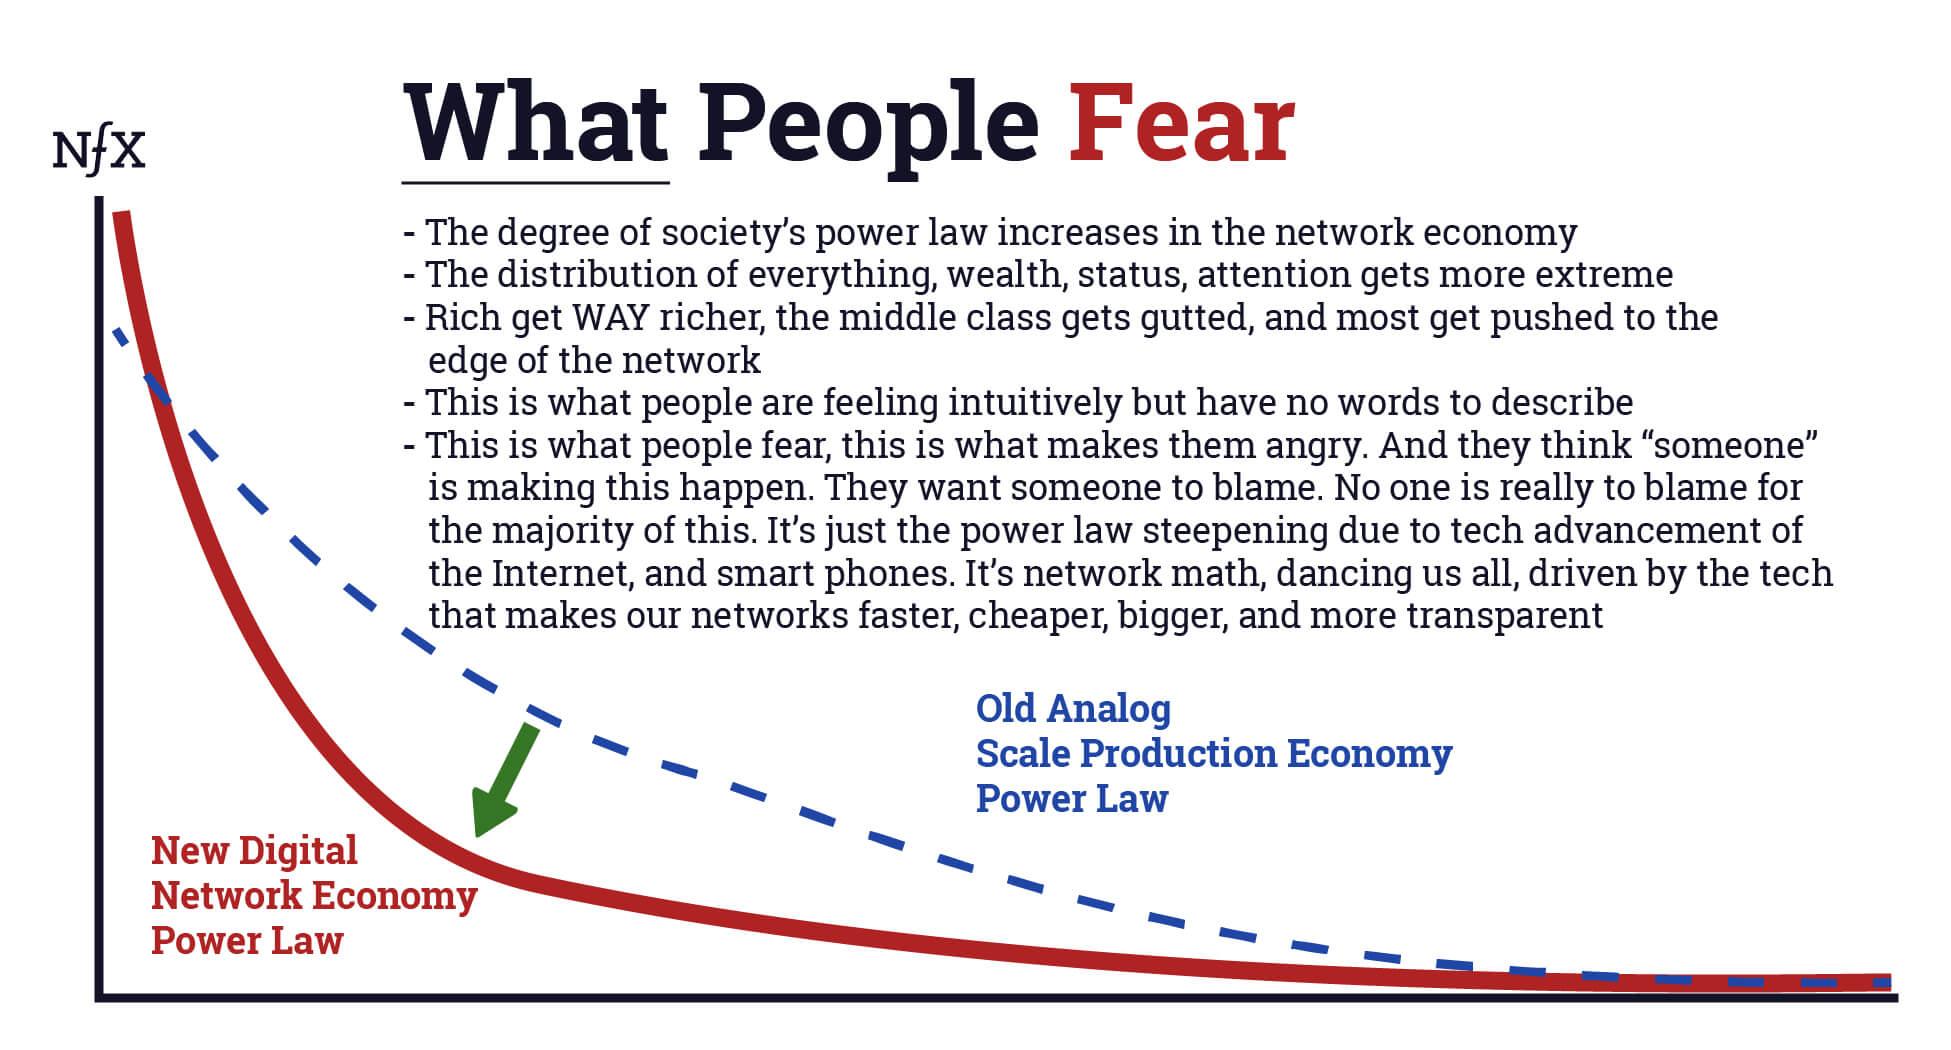 Network Economy - 5